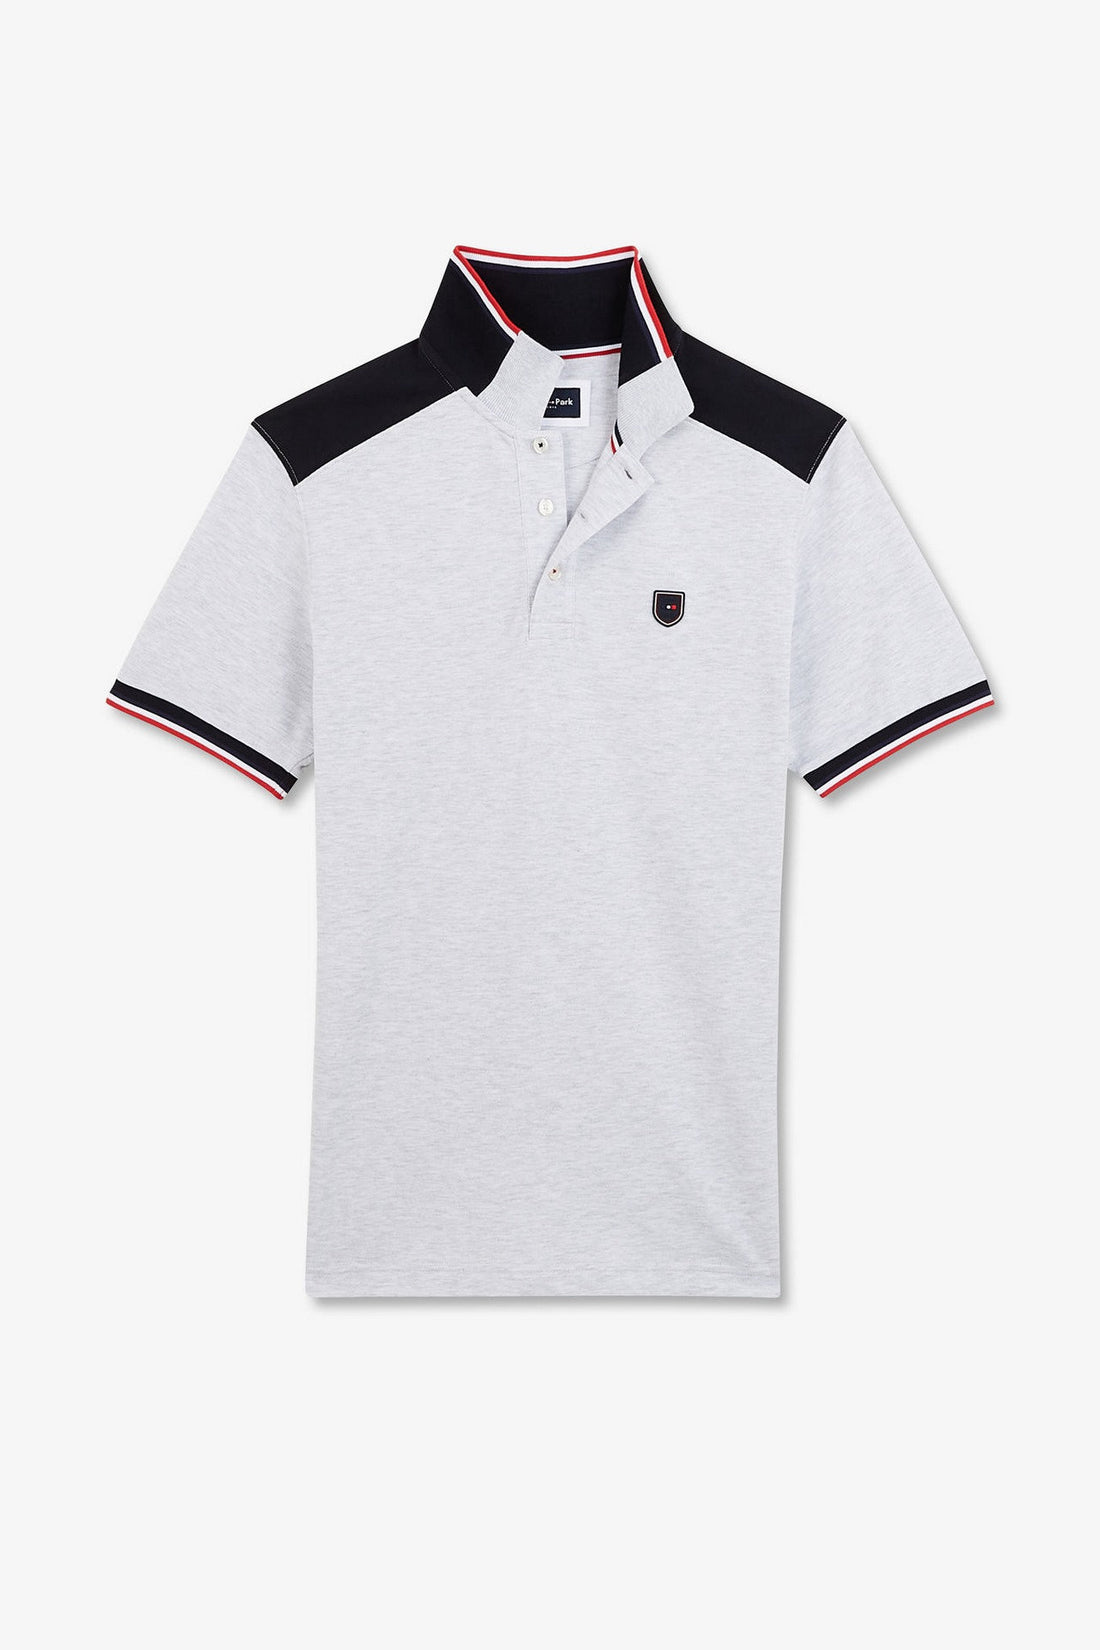 Grey Short-Sleeved Colour-Block Polo Shirt_E24MAIPC0020_GRC7_02